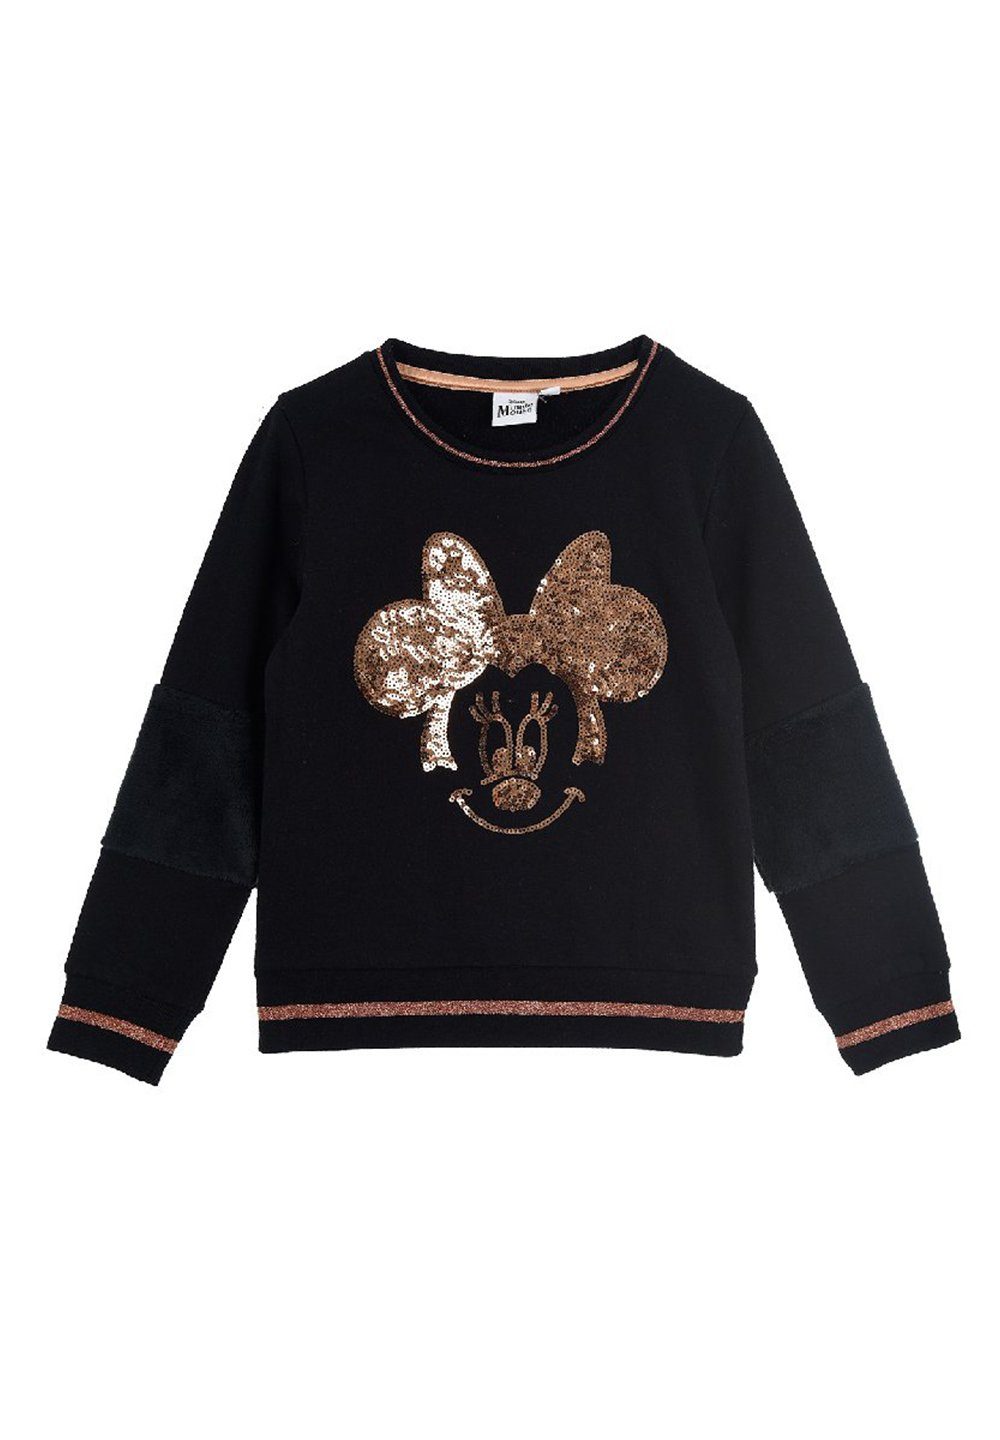 Disney Minnie Mouse Sweatshirt Kinder Mädchen Pulli Sweater Pullover Motiv aus Pailletten